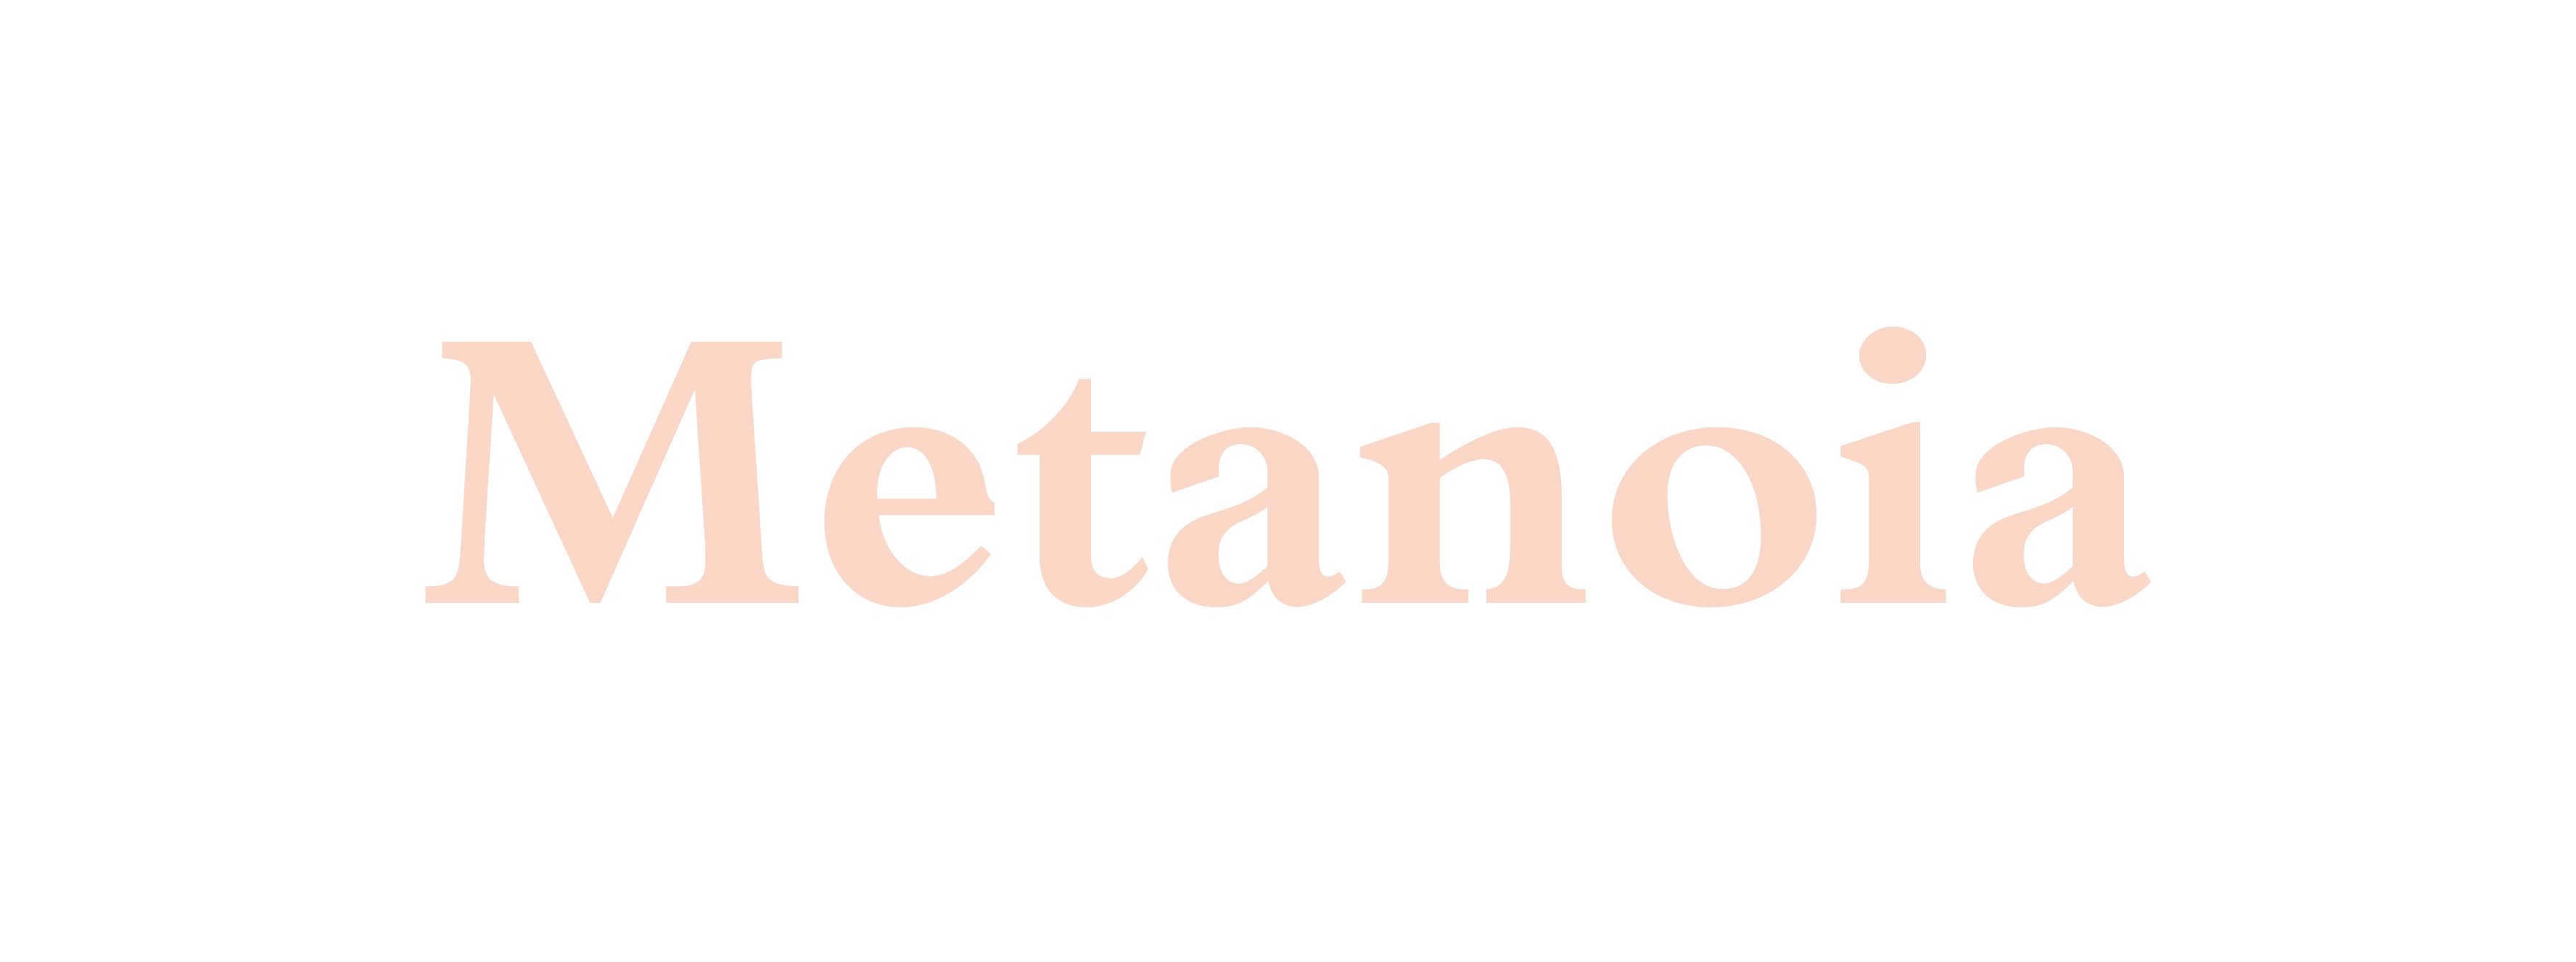 Metanoia - Word Daily